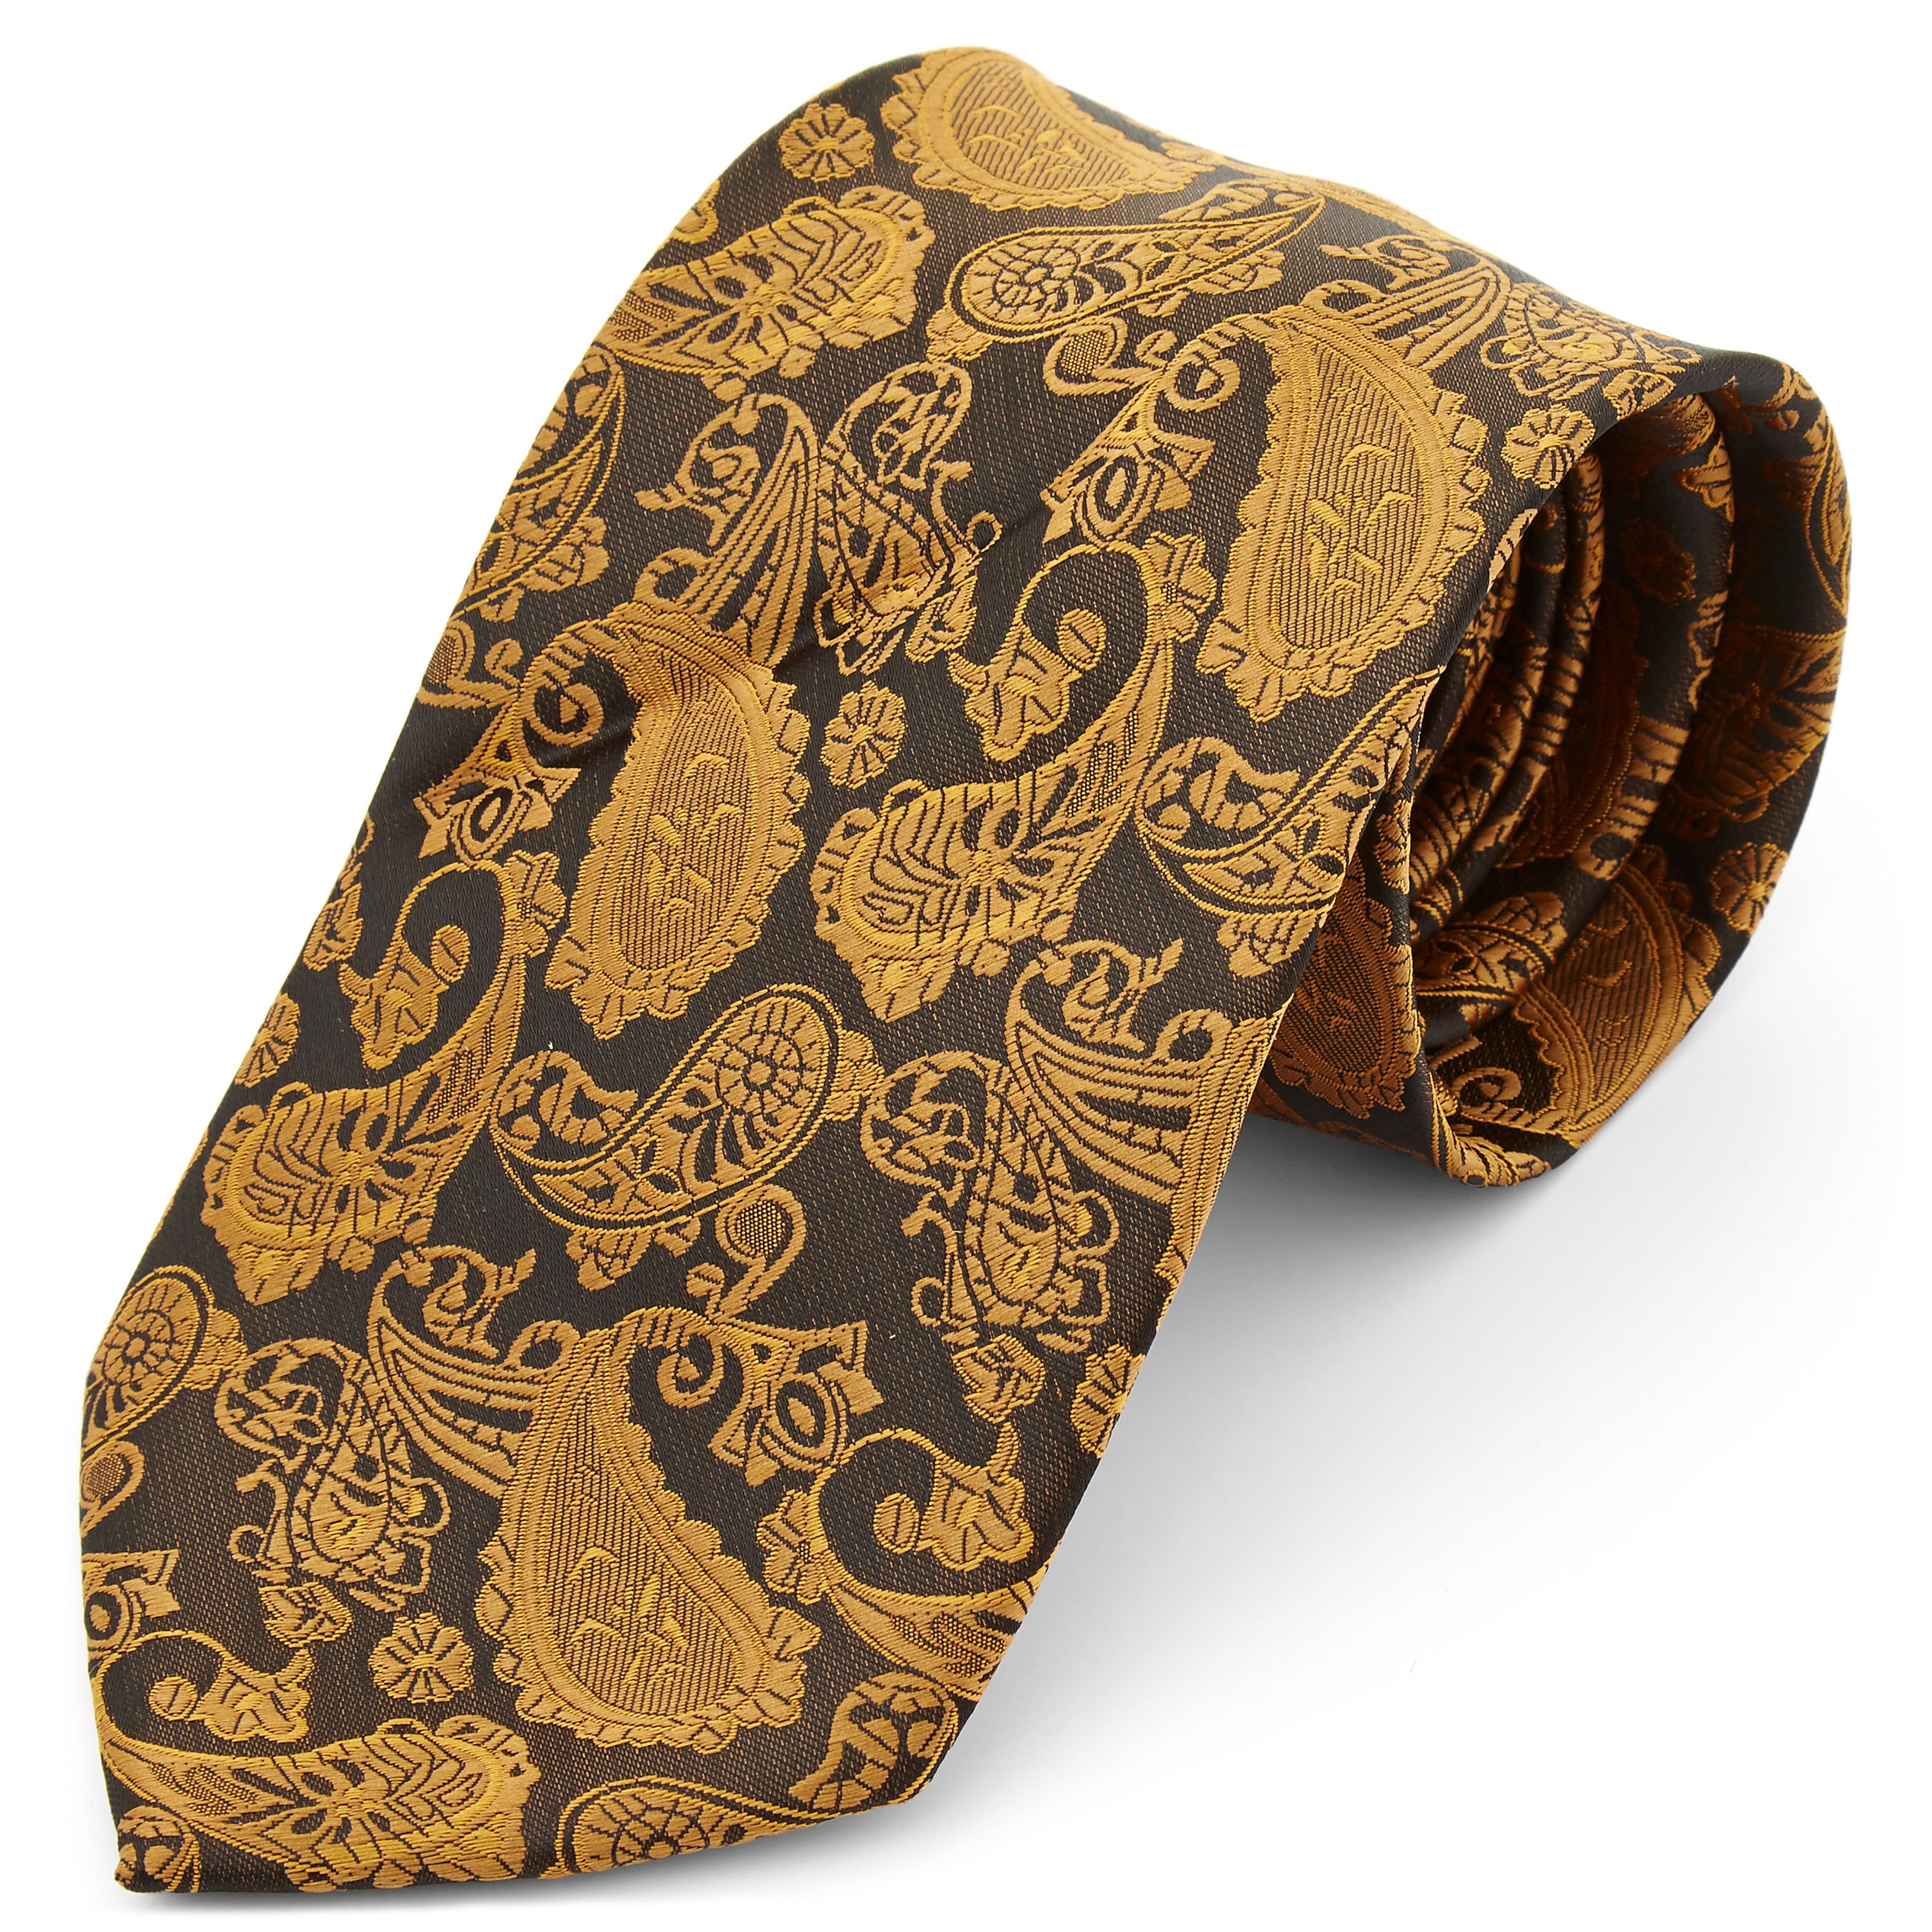 Cravate à motif cachemire brun & or  - large 